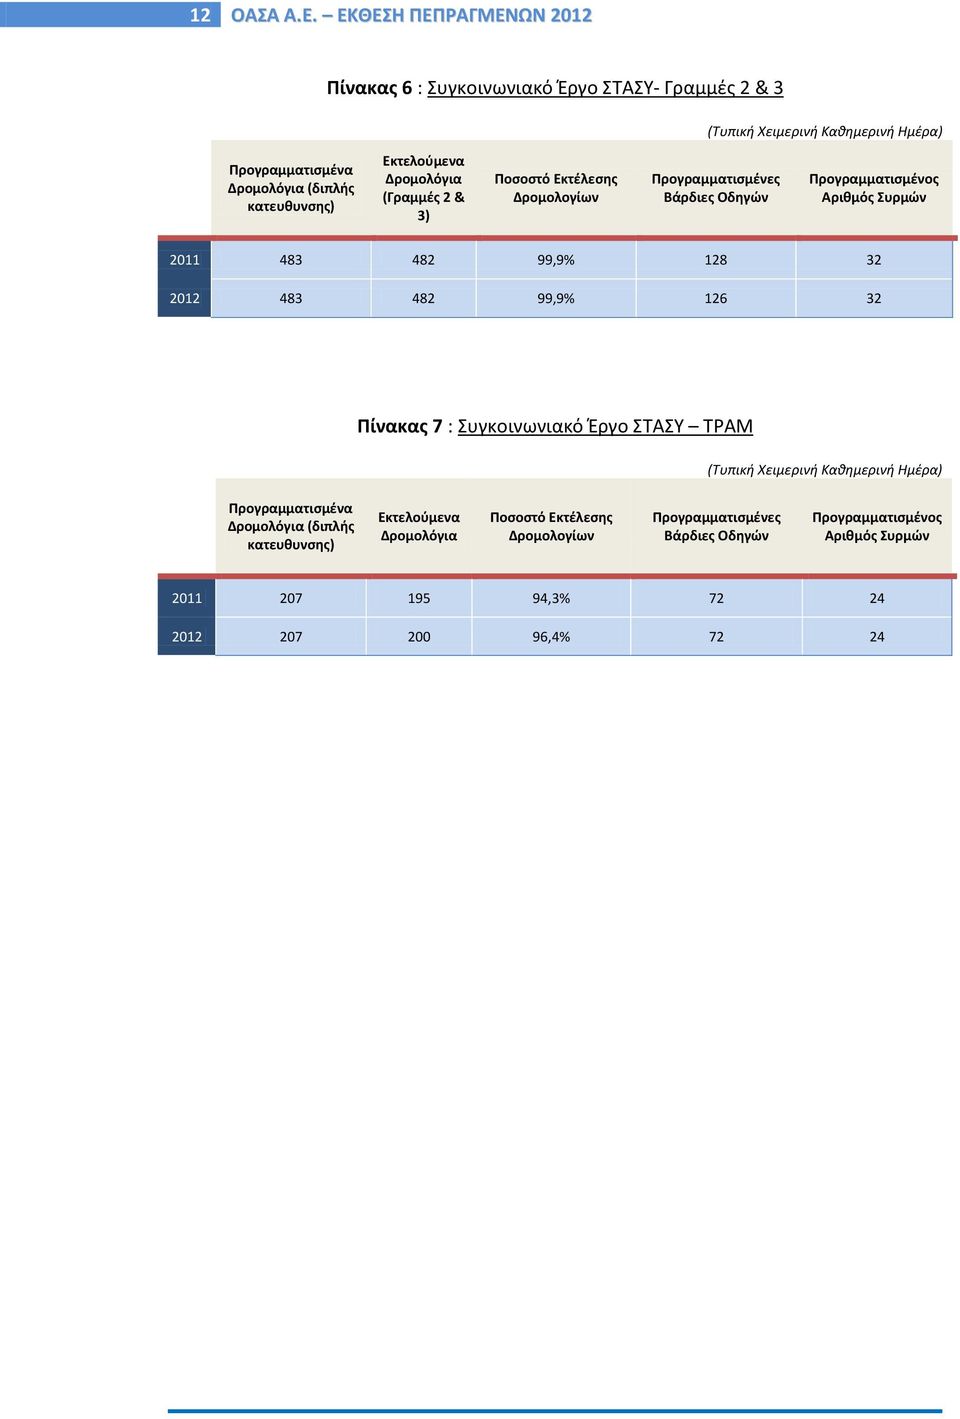 Εκτελούμενα Δρομολόγια (Γραμμές 2 & 3) Ποσοστό Εκτέλεσης Δρομολογίων Προγραμματισμένες Βάρδιες Οδηγών Προγραμματισμένος Αριθμός Συρμών 2011 483 482 99,9% 128 32